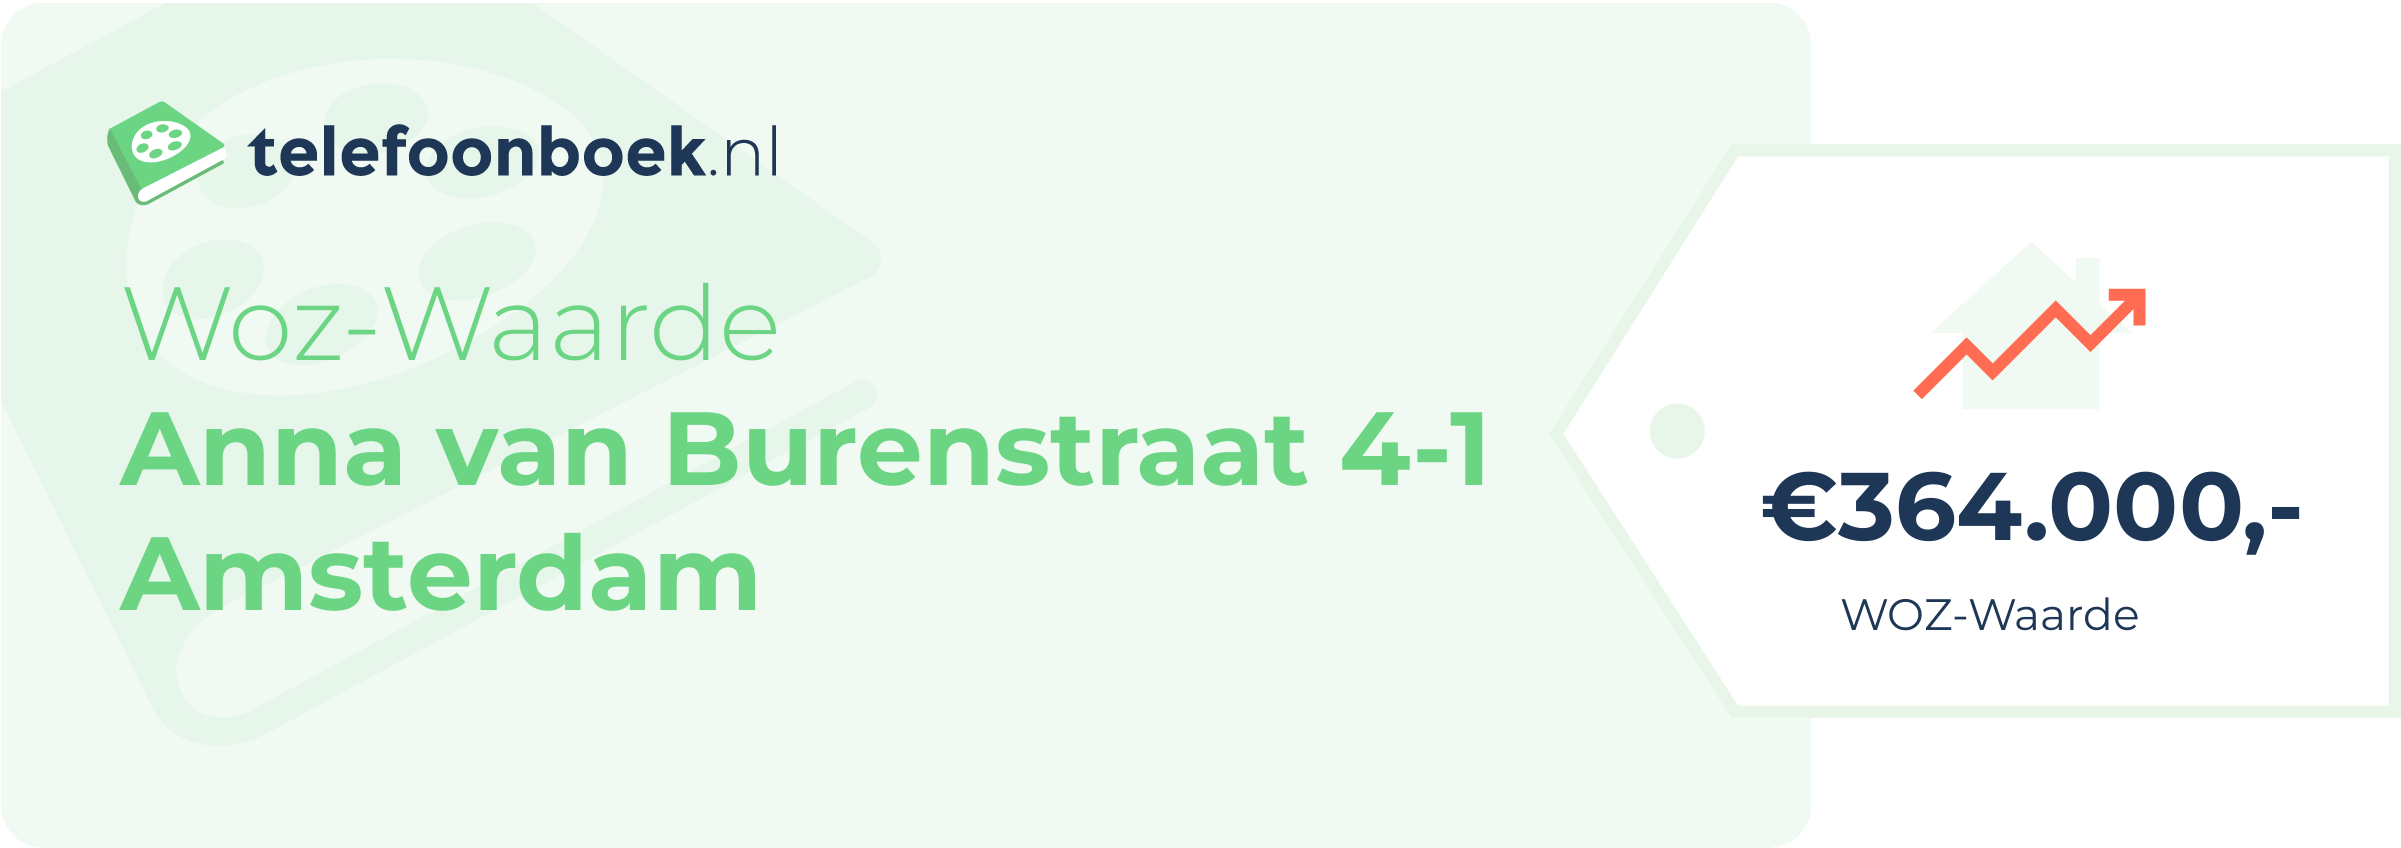 WOZ-waarde Anna Van Burenstraat 4-1 Amsterdam